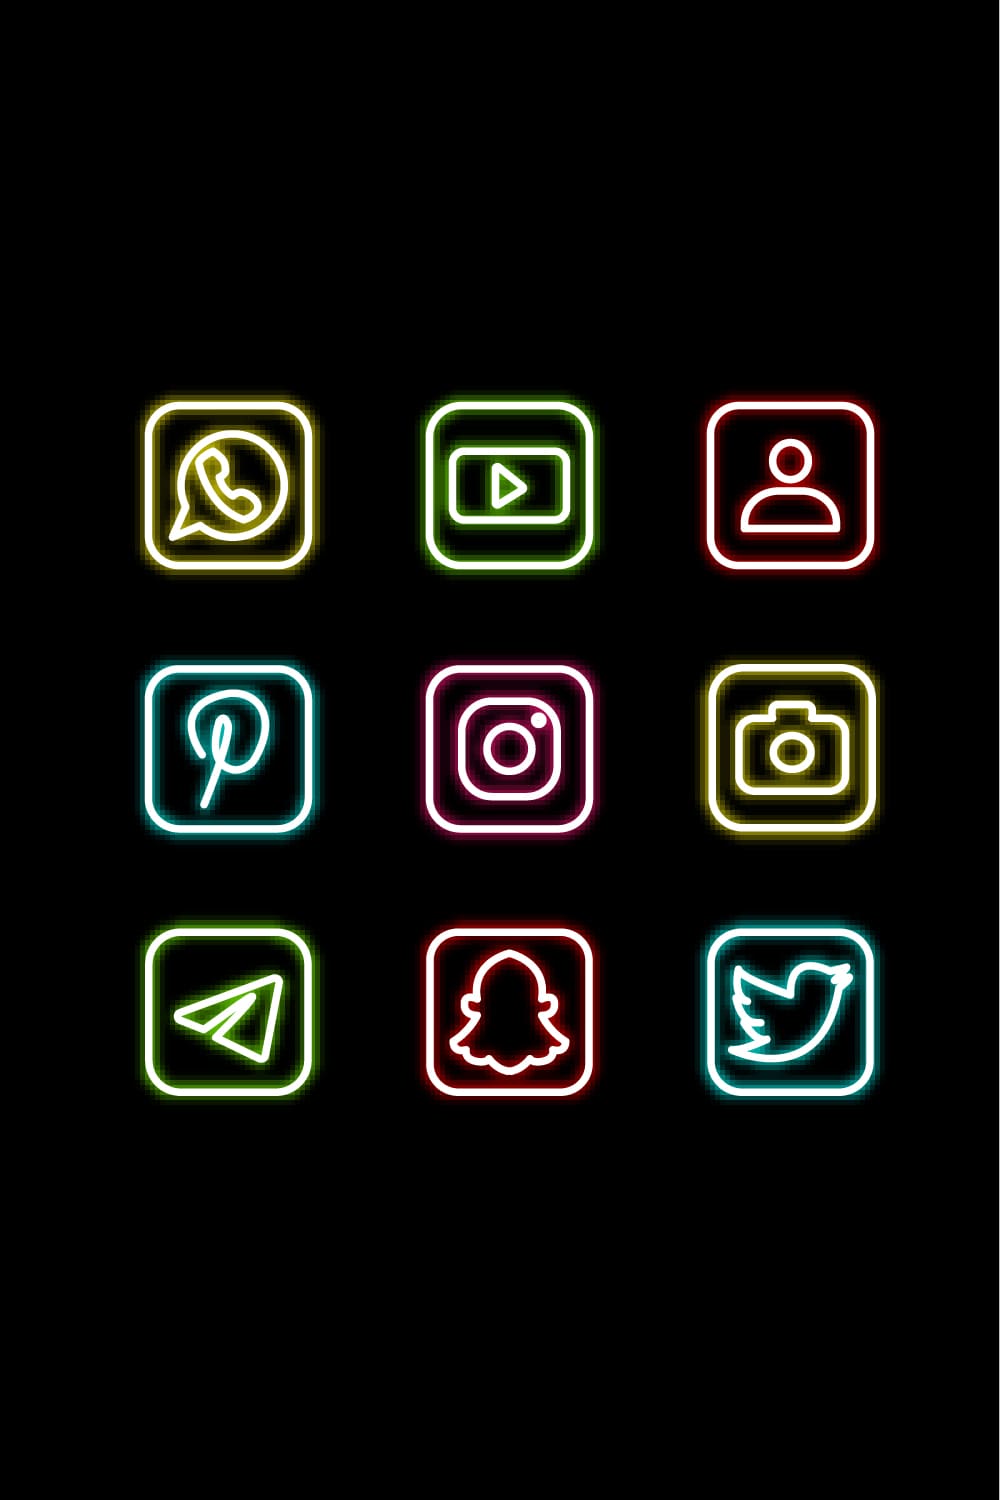 Neon App Icons Pinterest.